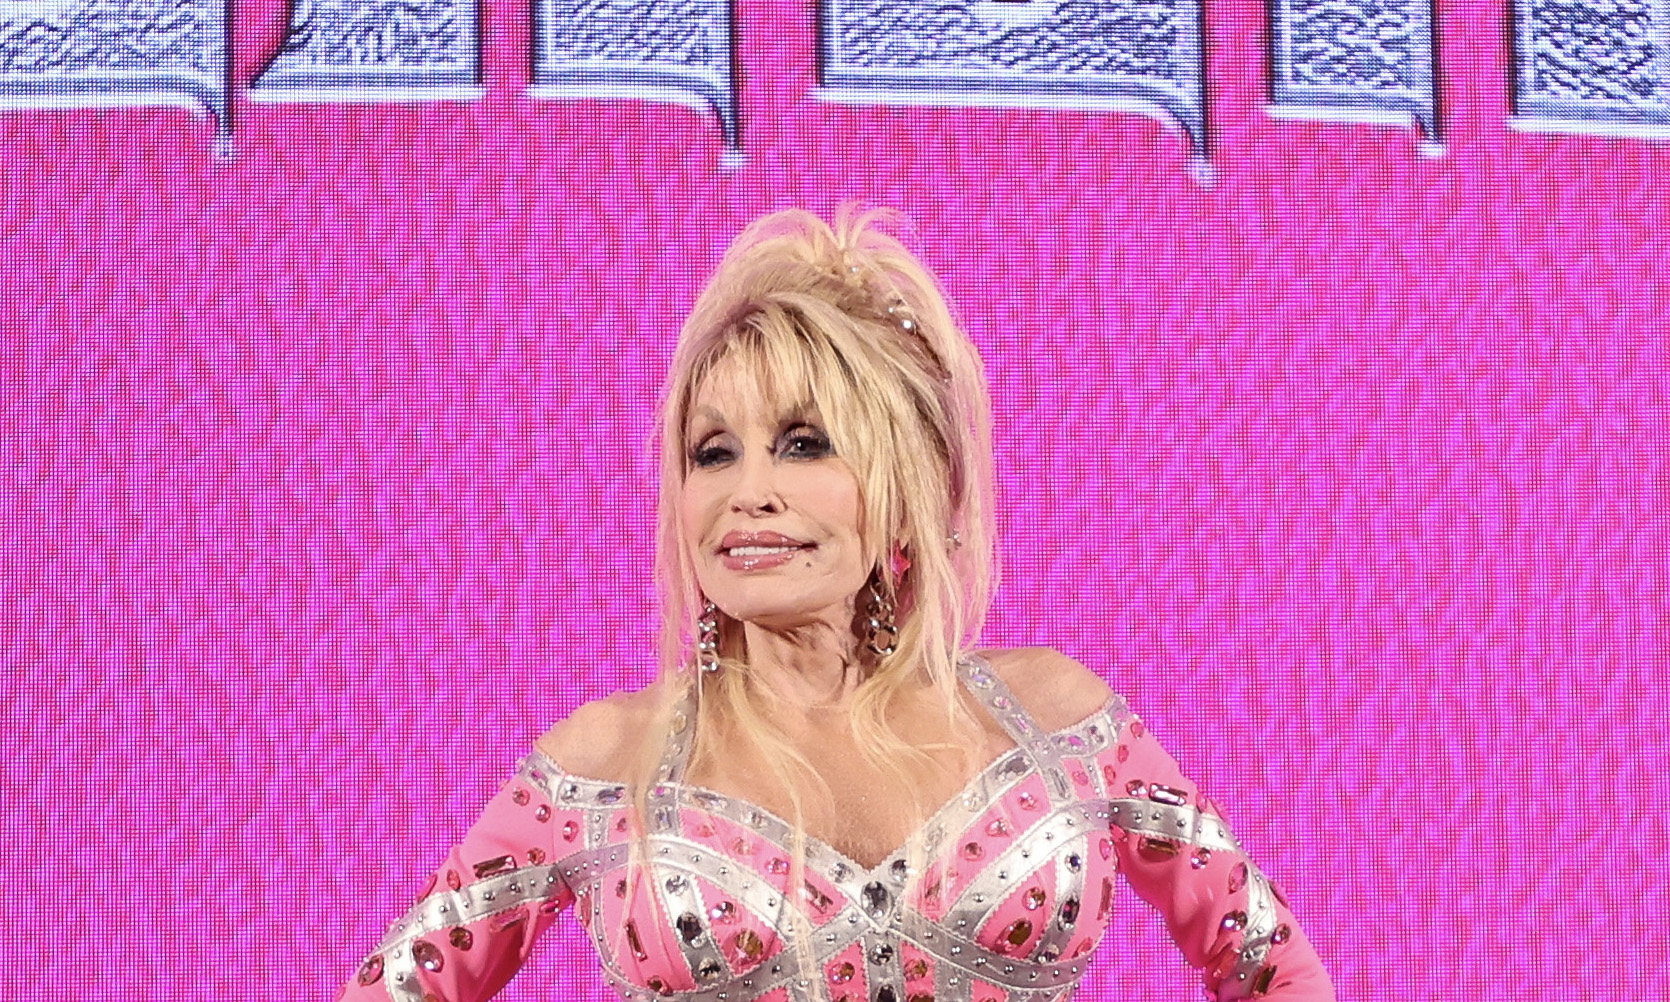 Dolly Parton receives $100 million award from Jeff Bezos